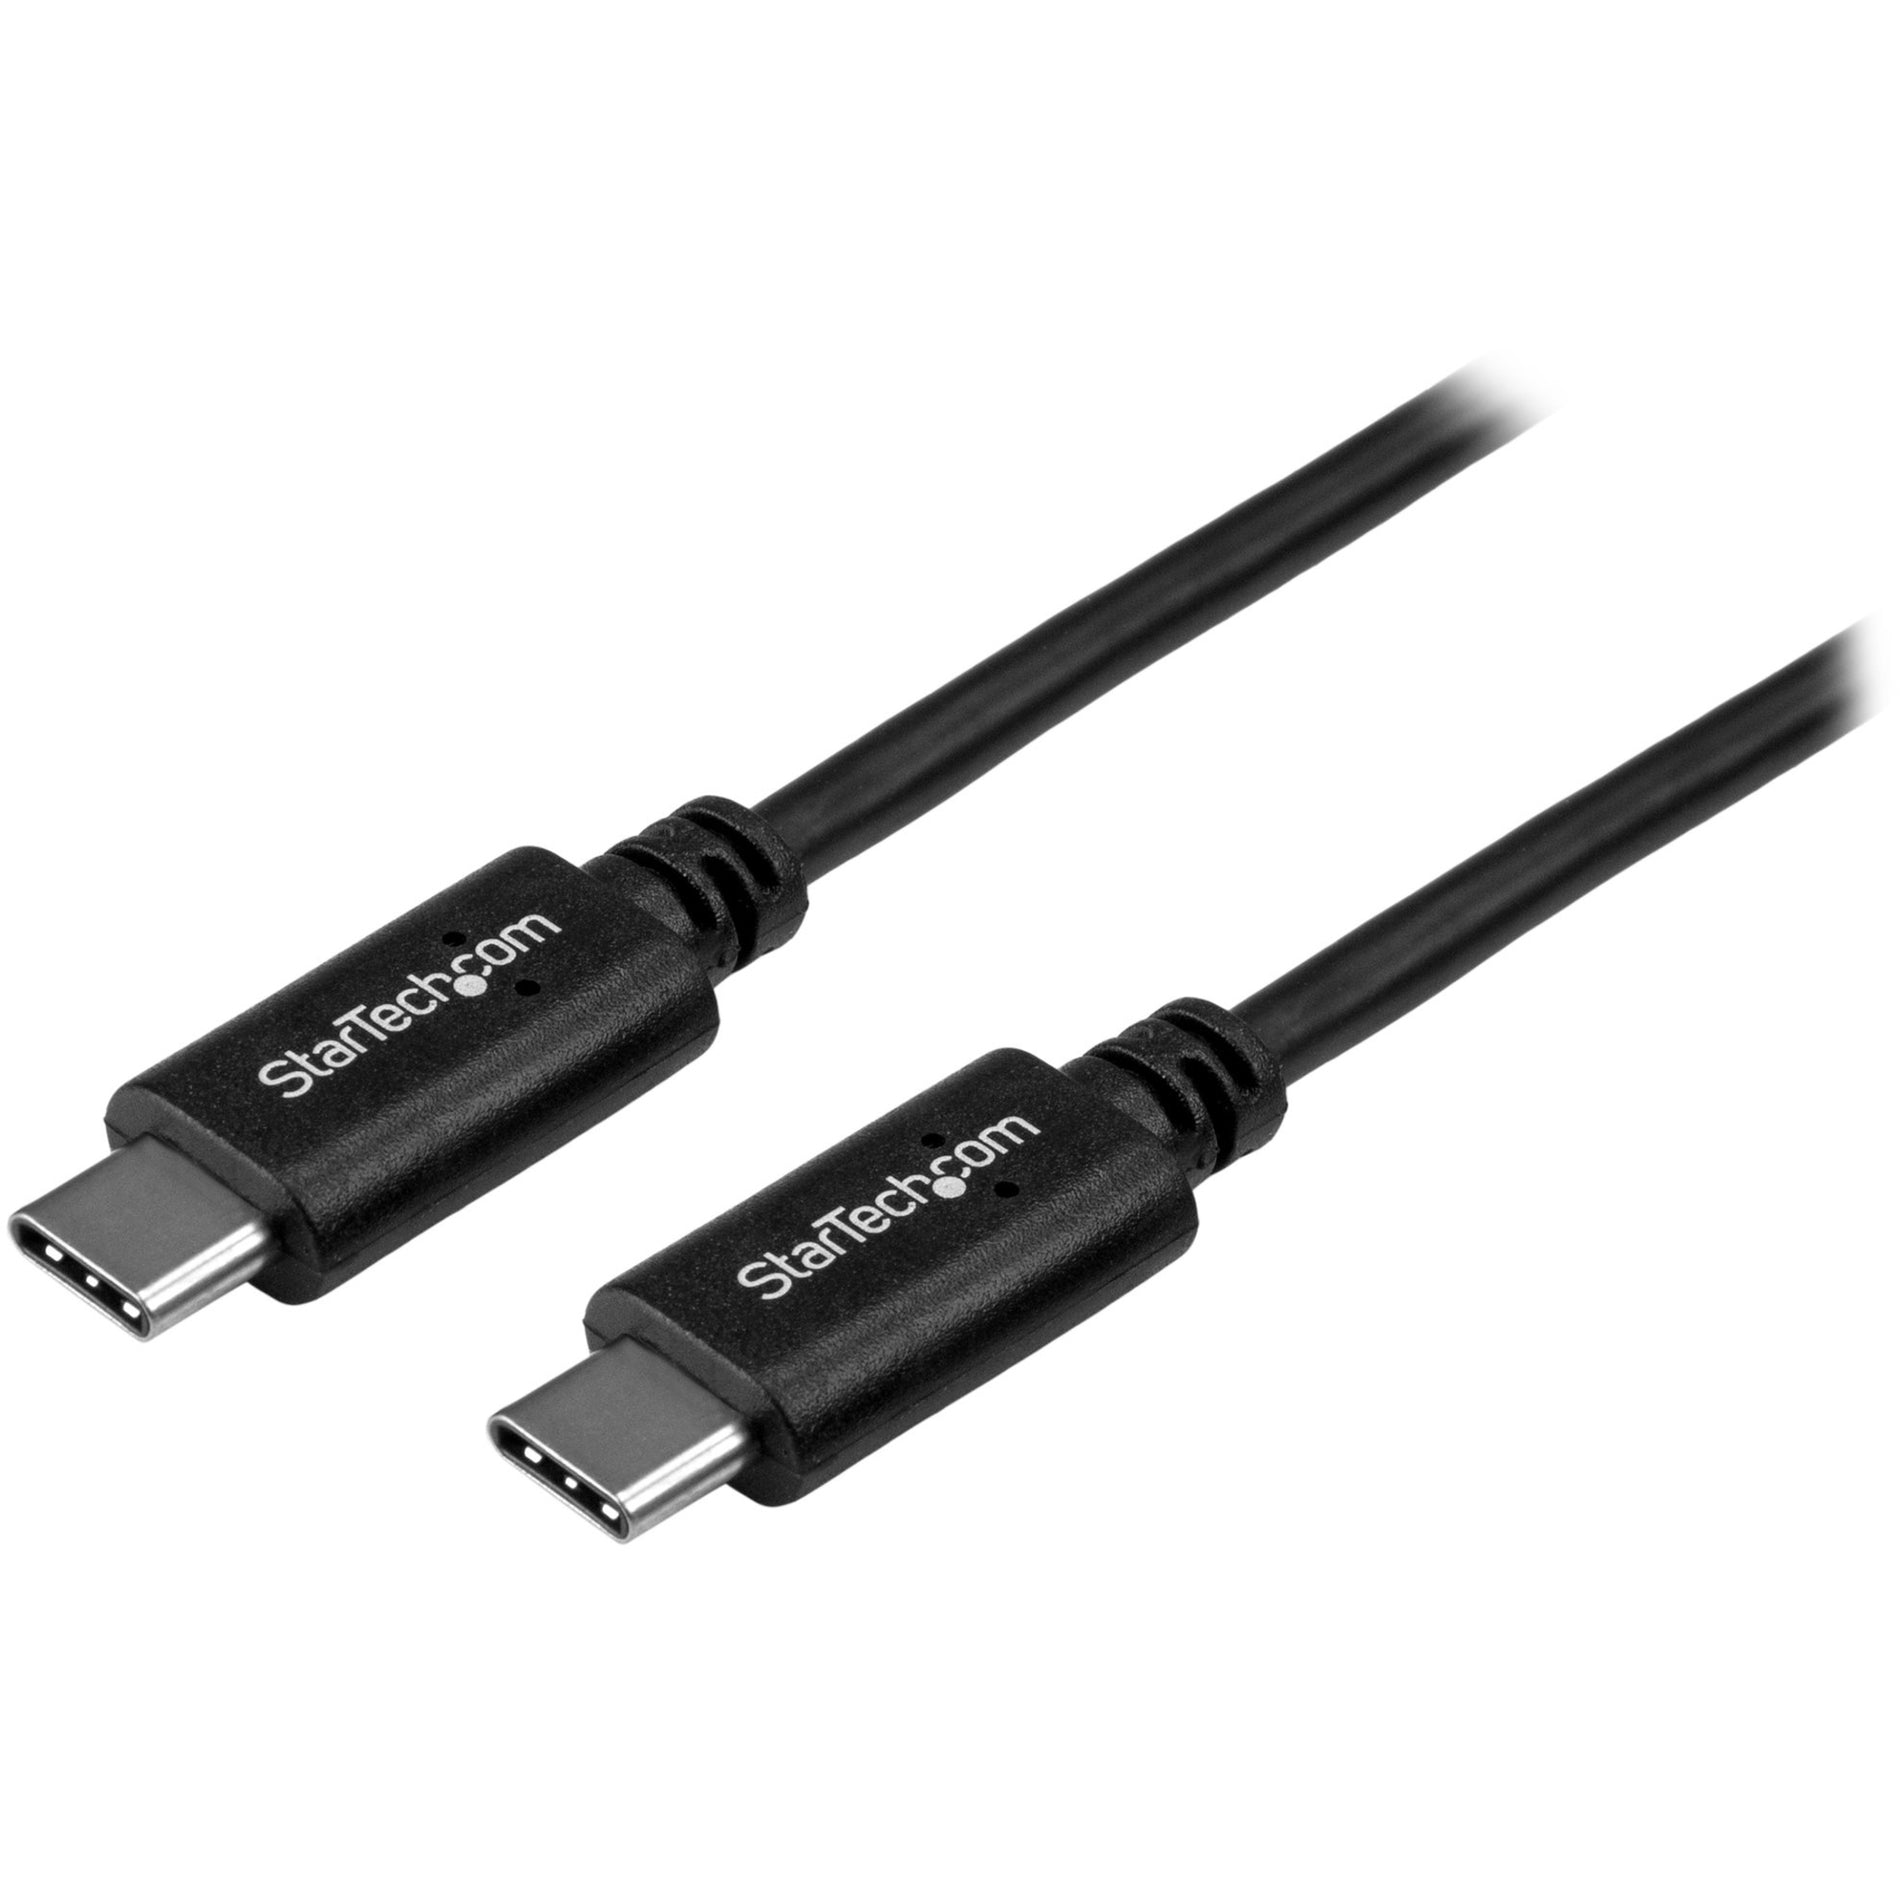 StarTech.com USB2CC50CM USB-C Cable - M/M - 0.5m - USB 2.0, Short USB C Cable, USB-C Charger Cable